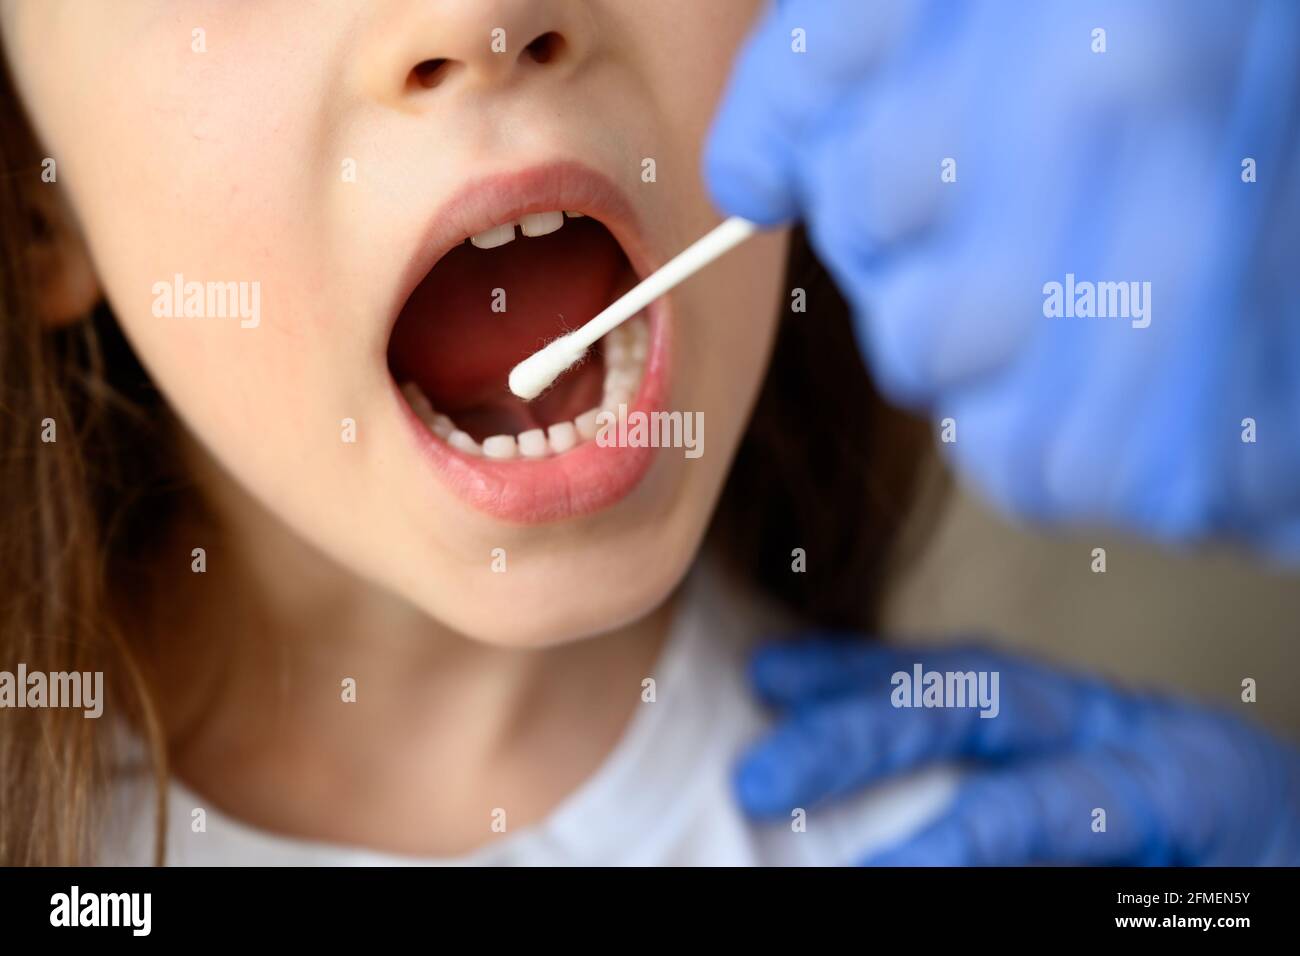 Test du coronavirus et bouche, Kid ouvre la bouche pour le diagnostic COVID-19. Le médecin ou l'infirmière tient un écouvillon pour l'échantillon de salive de l'enfant. PCR orale du virus Corona t Banque D'Images